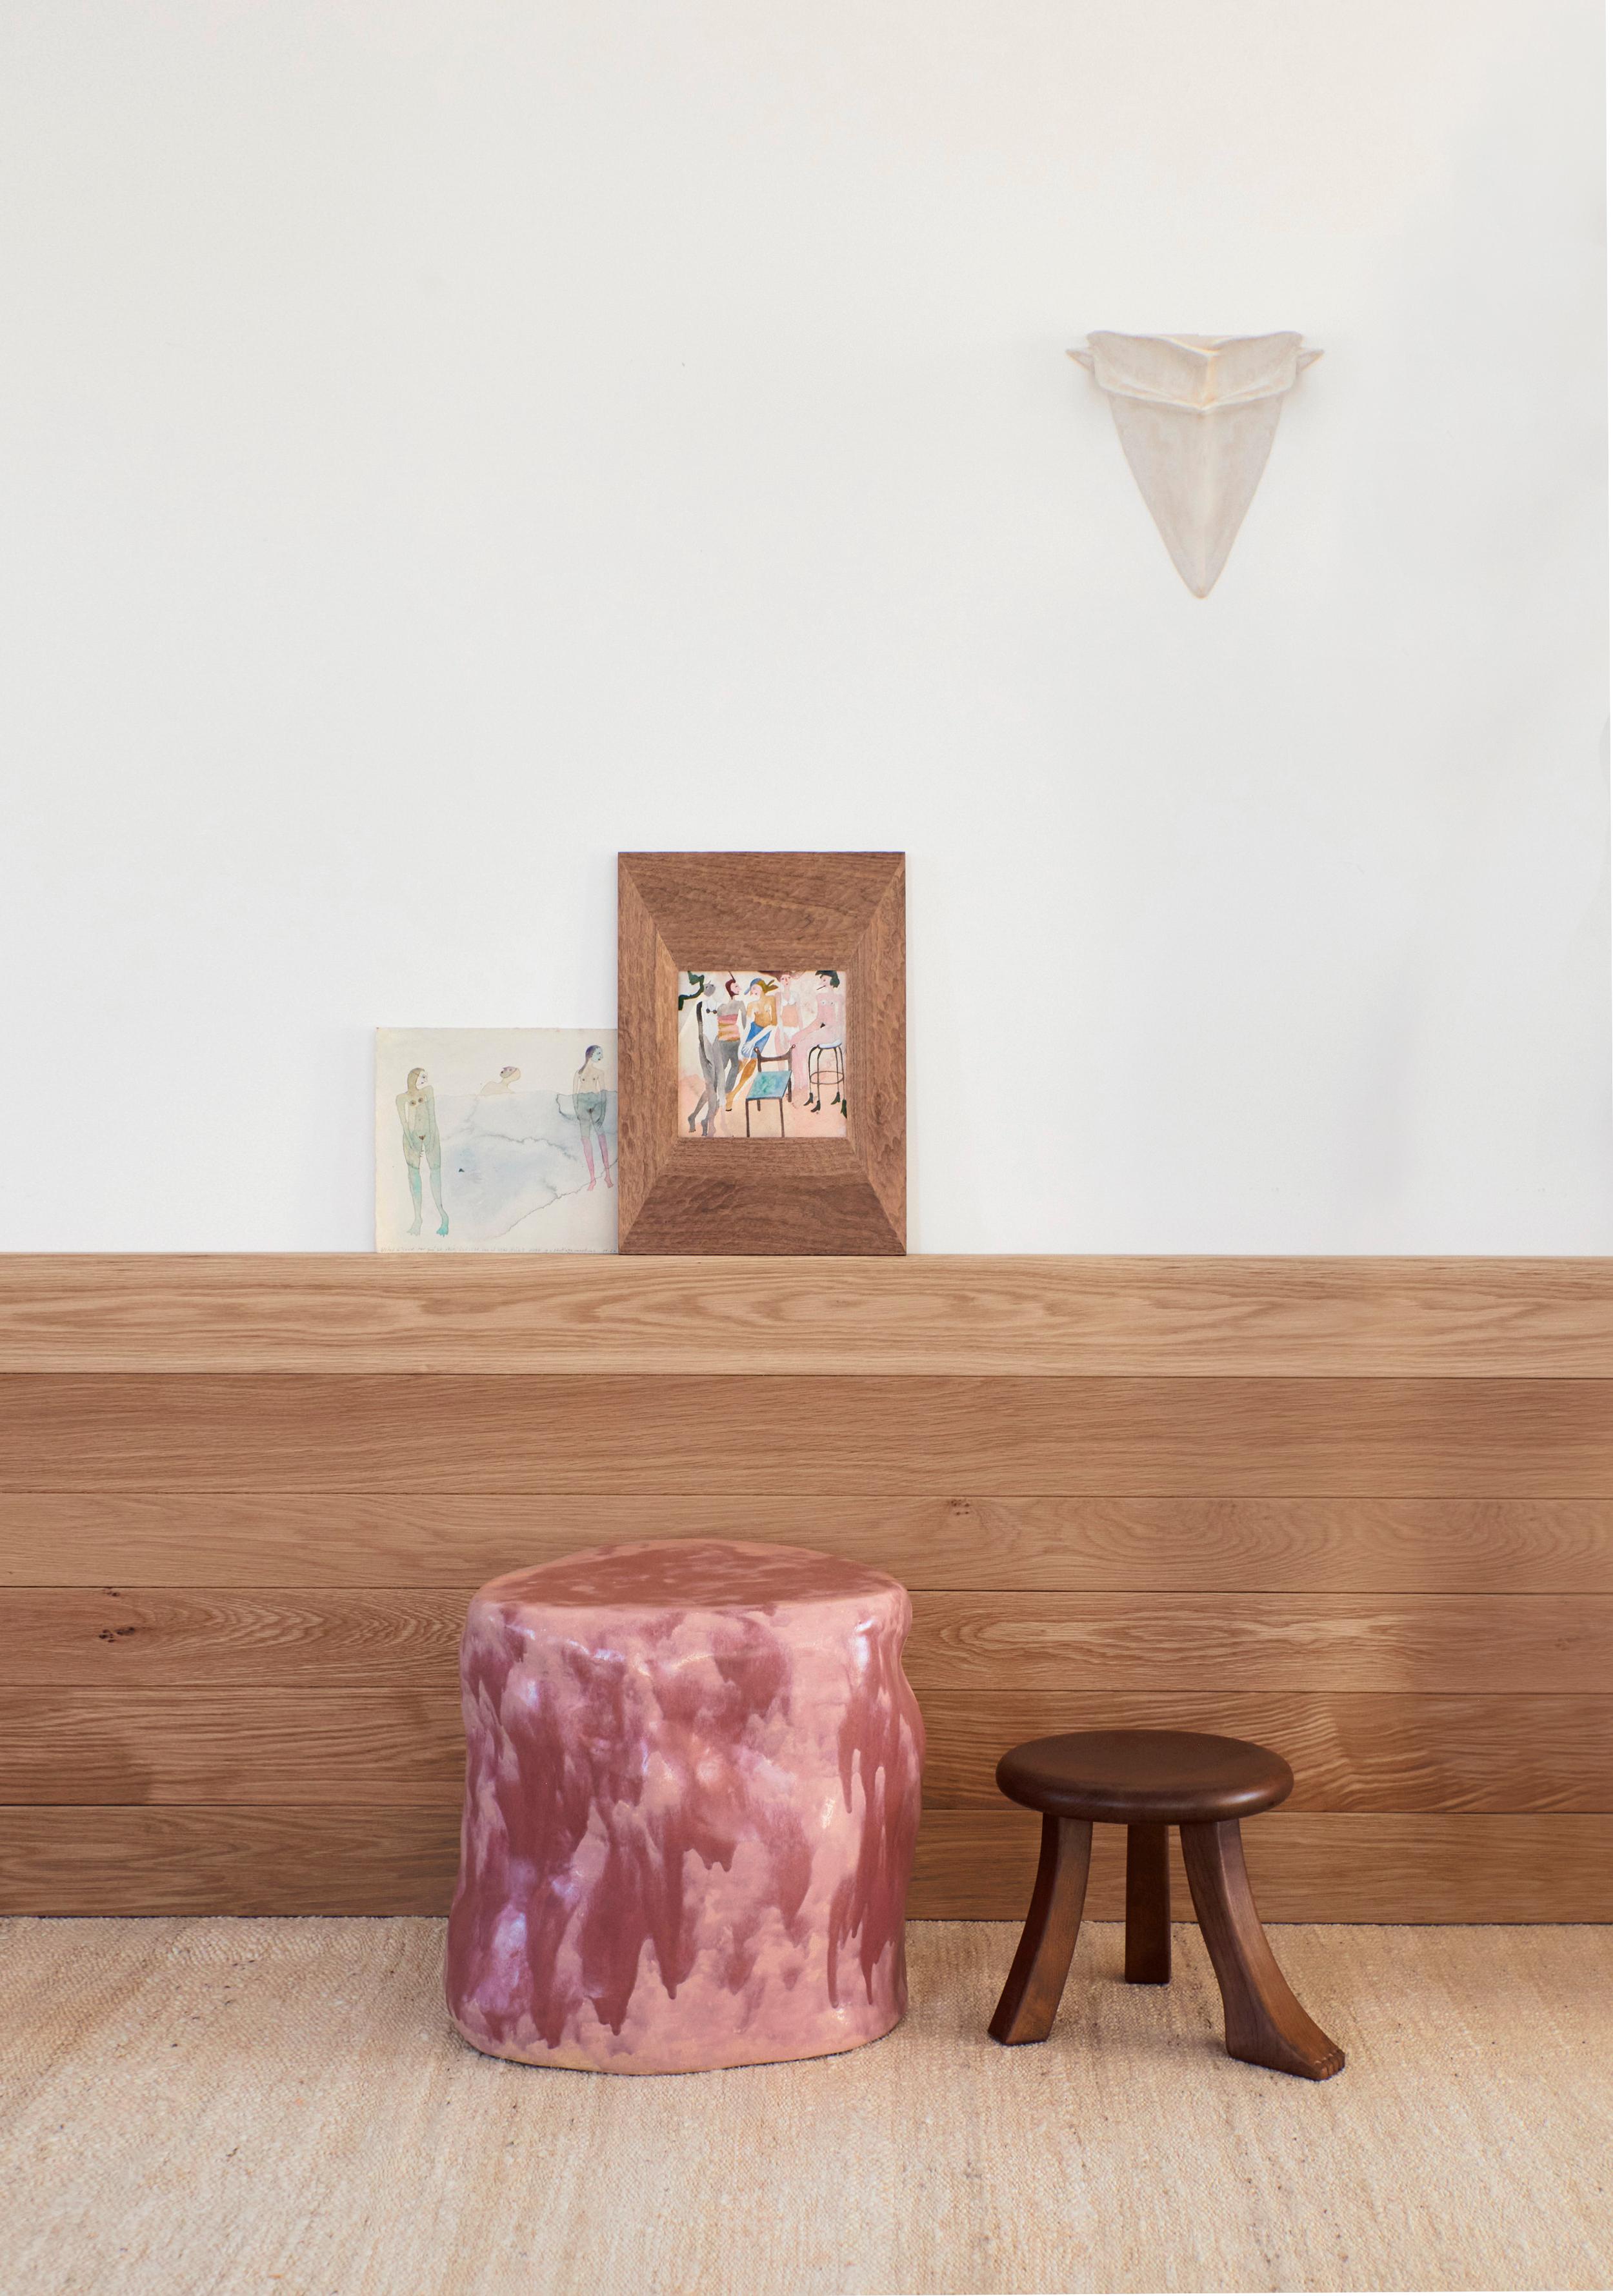 Grande table d'appoint en céramique rose
Conçu par le project 213A en 2023

Les tables d'appoint en céramique artisanale ont été créées en interne et sont le résultat de l'exploration de formes traditionnelles avec une touche ludique sur les